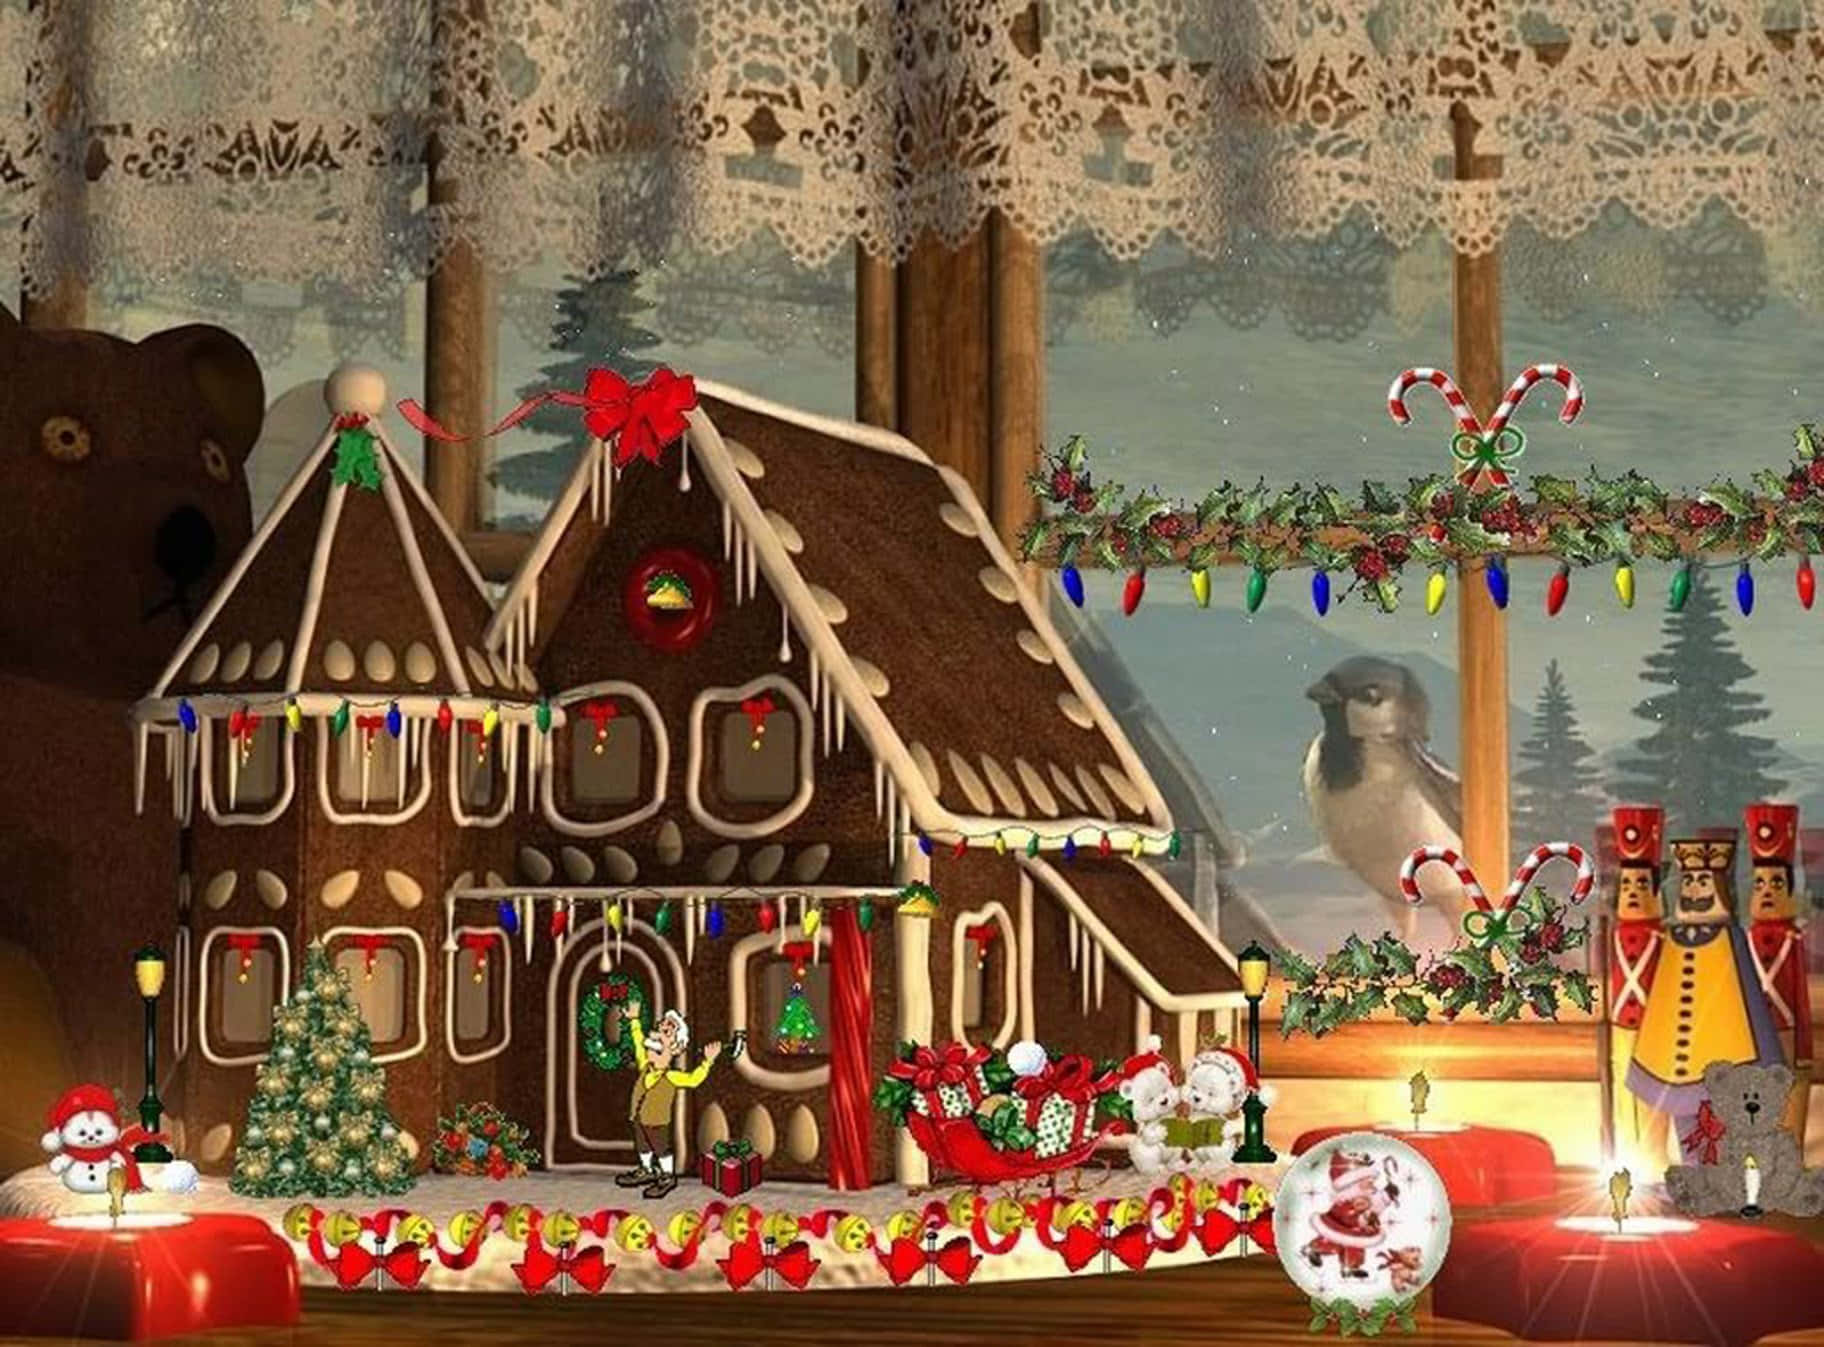 Festive Gingerbread House Scene